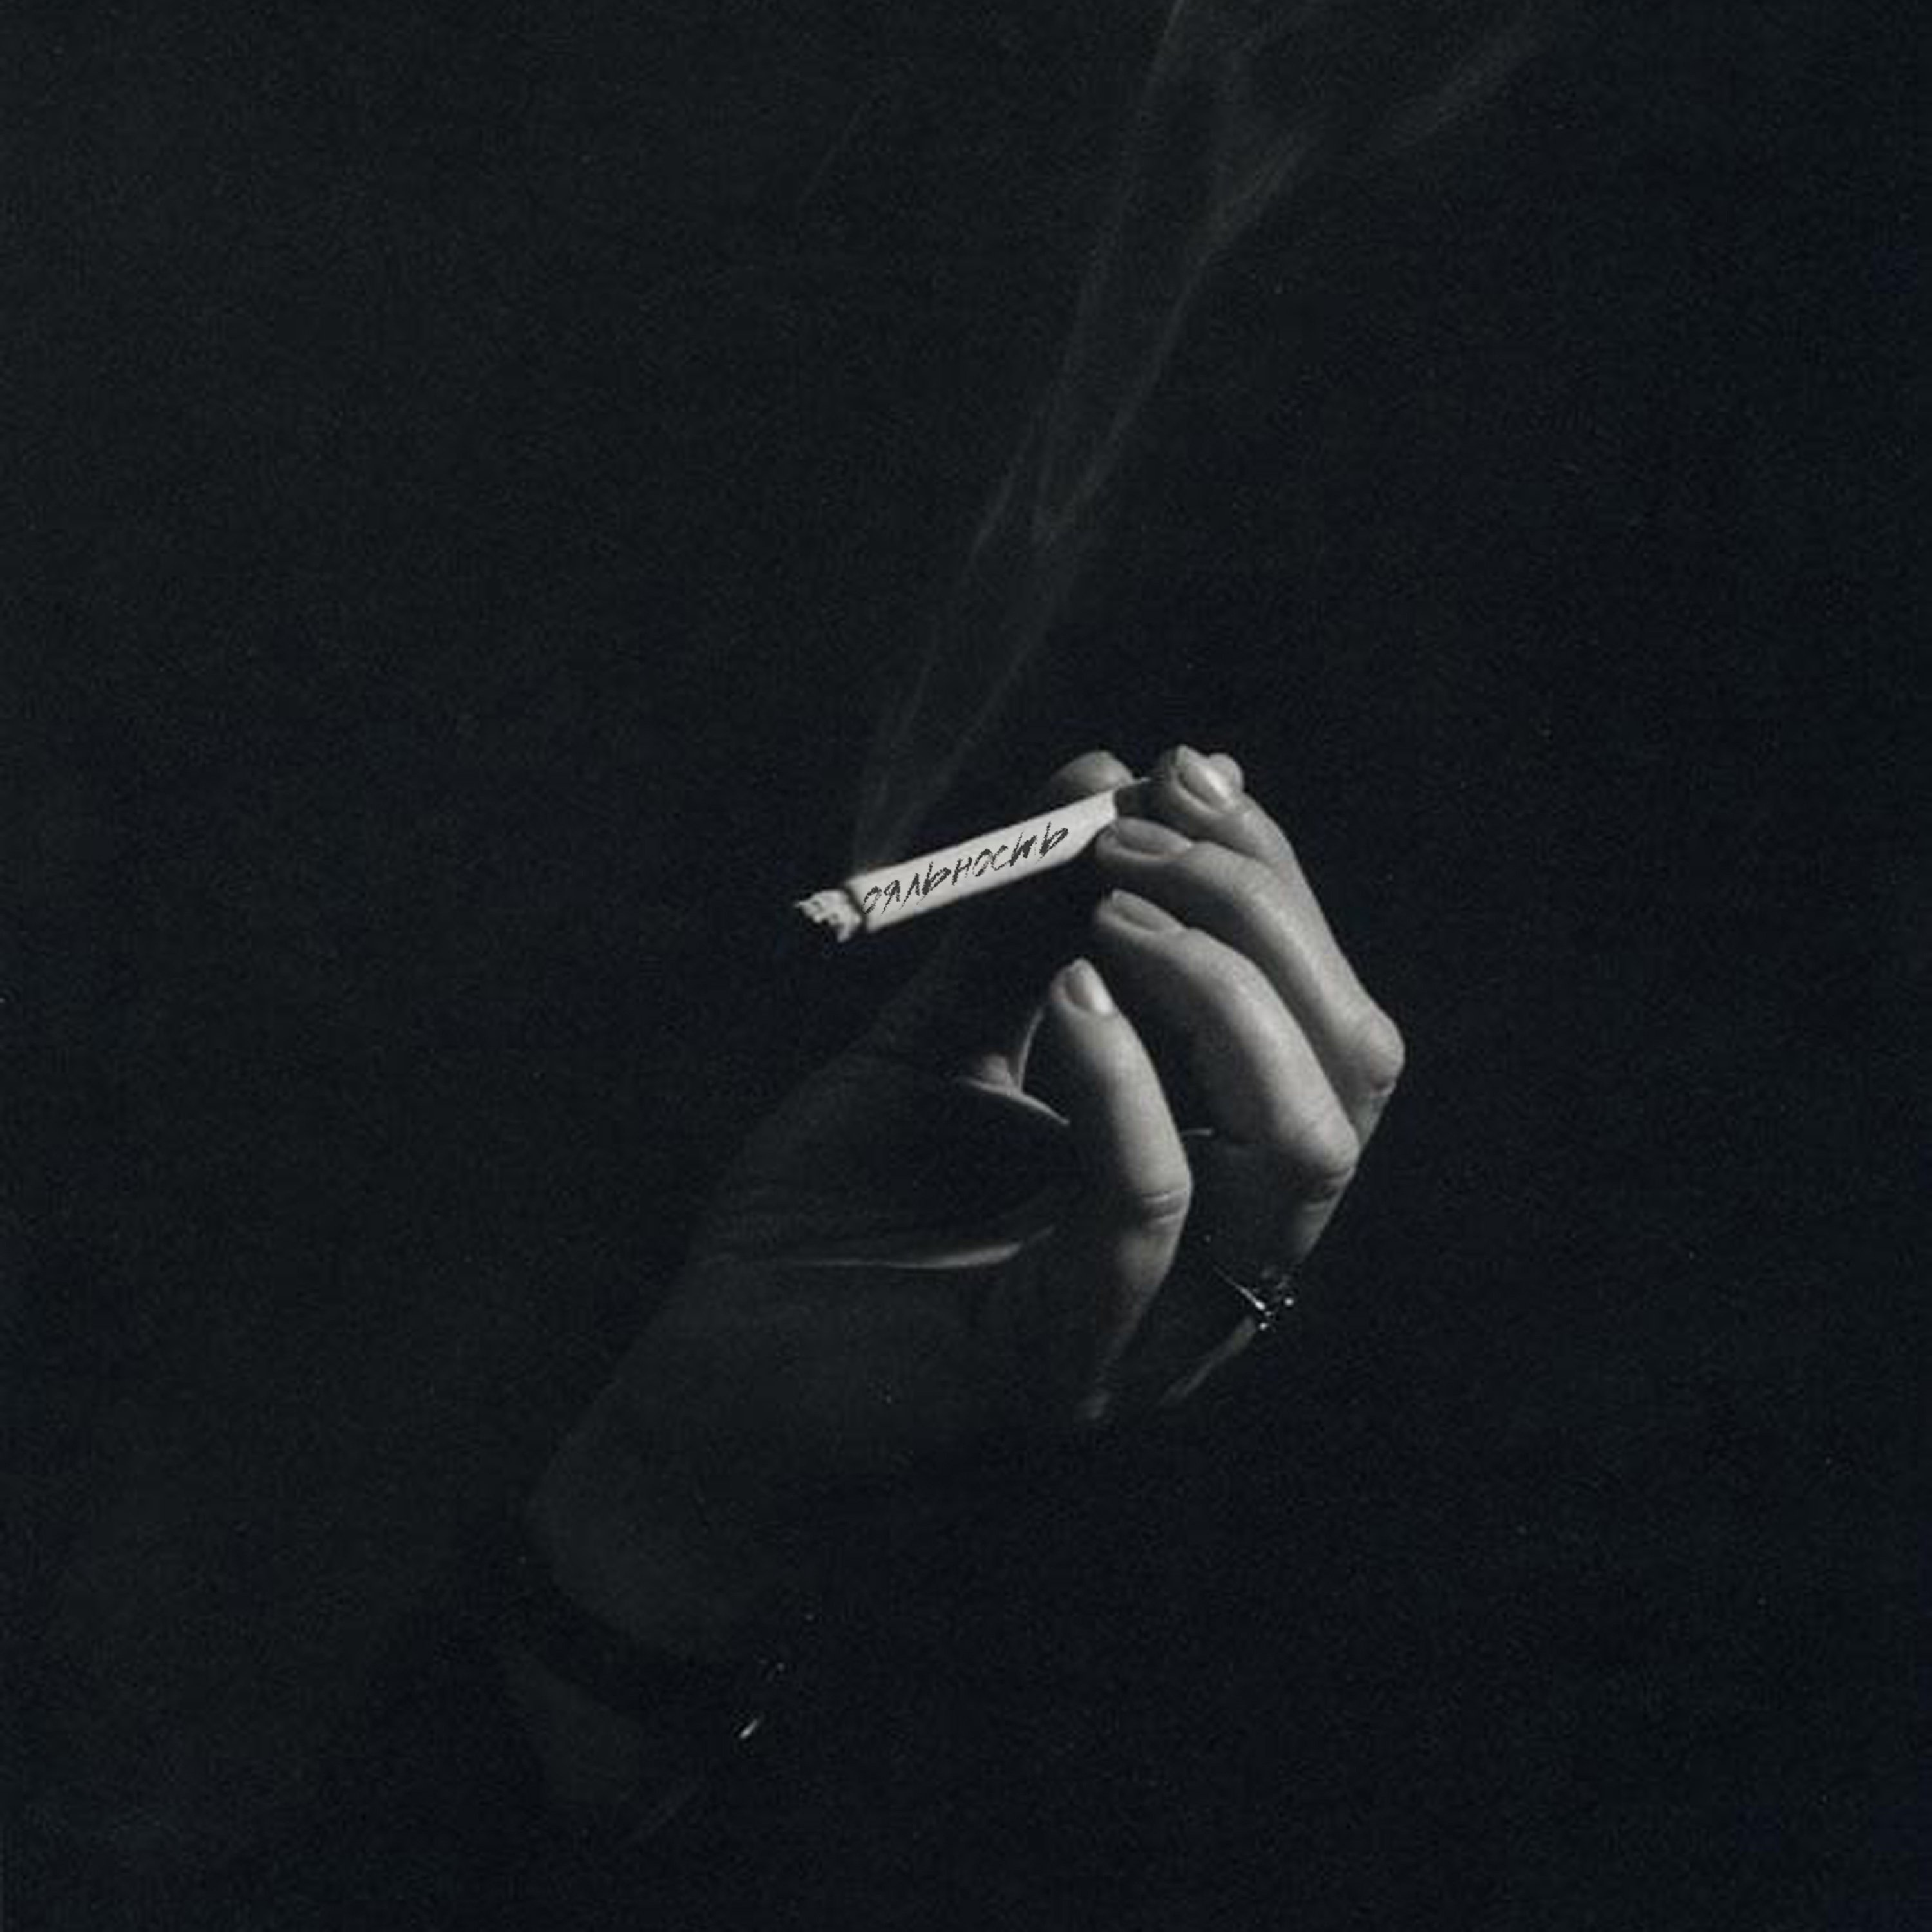 Не потушит боль сигаретный дым дорогой коньяк. Сигареты Эстетика. Мужская рука с сигаретой. Сигаретатв руке еа черном фоне. Курение Эстетика.